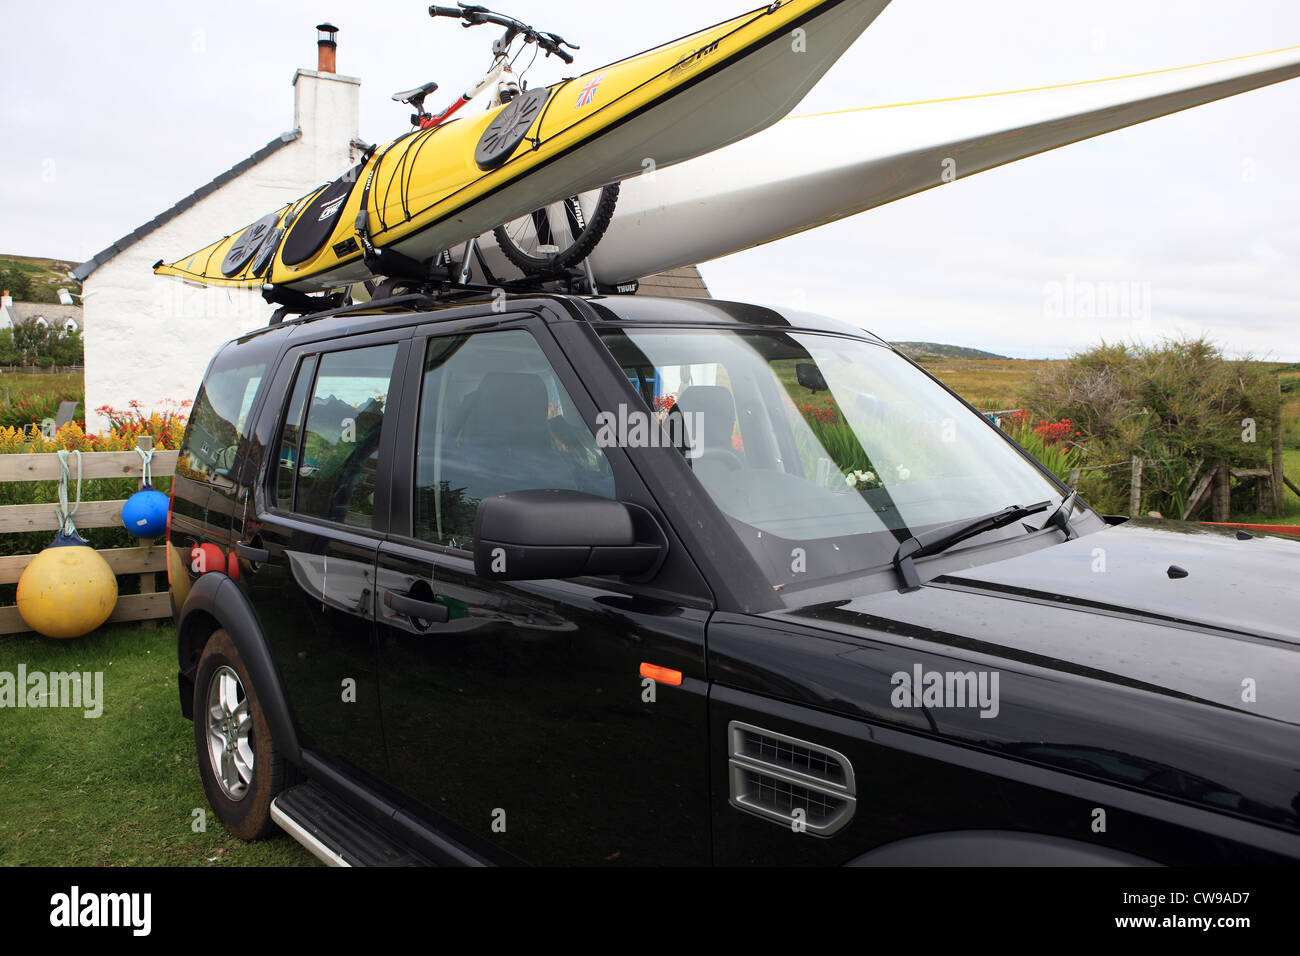 Land rover avec des kayaks et des vélos sur le toit Banque D'Images